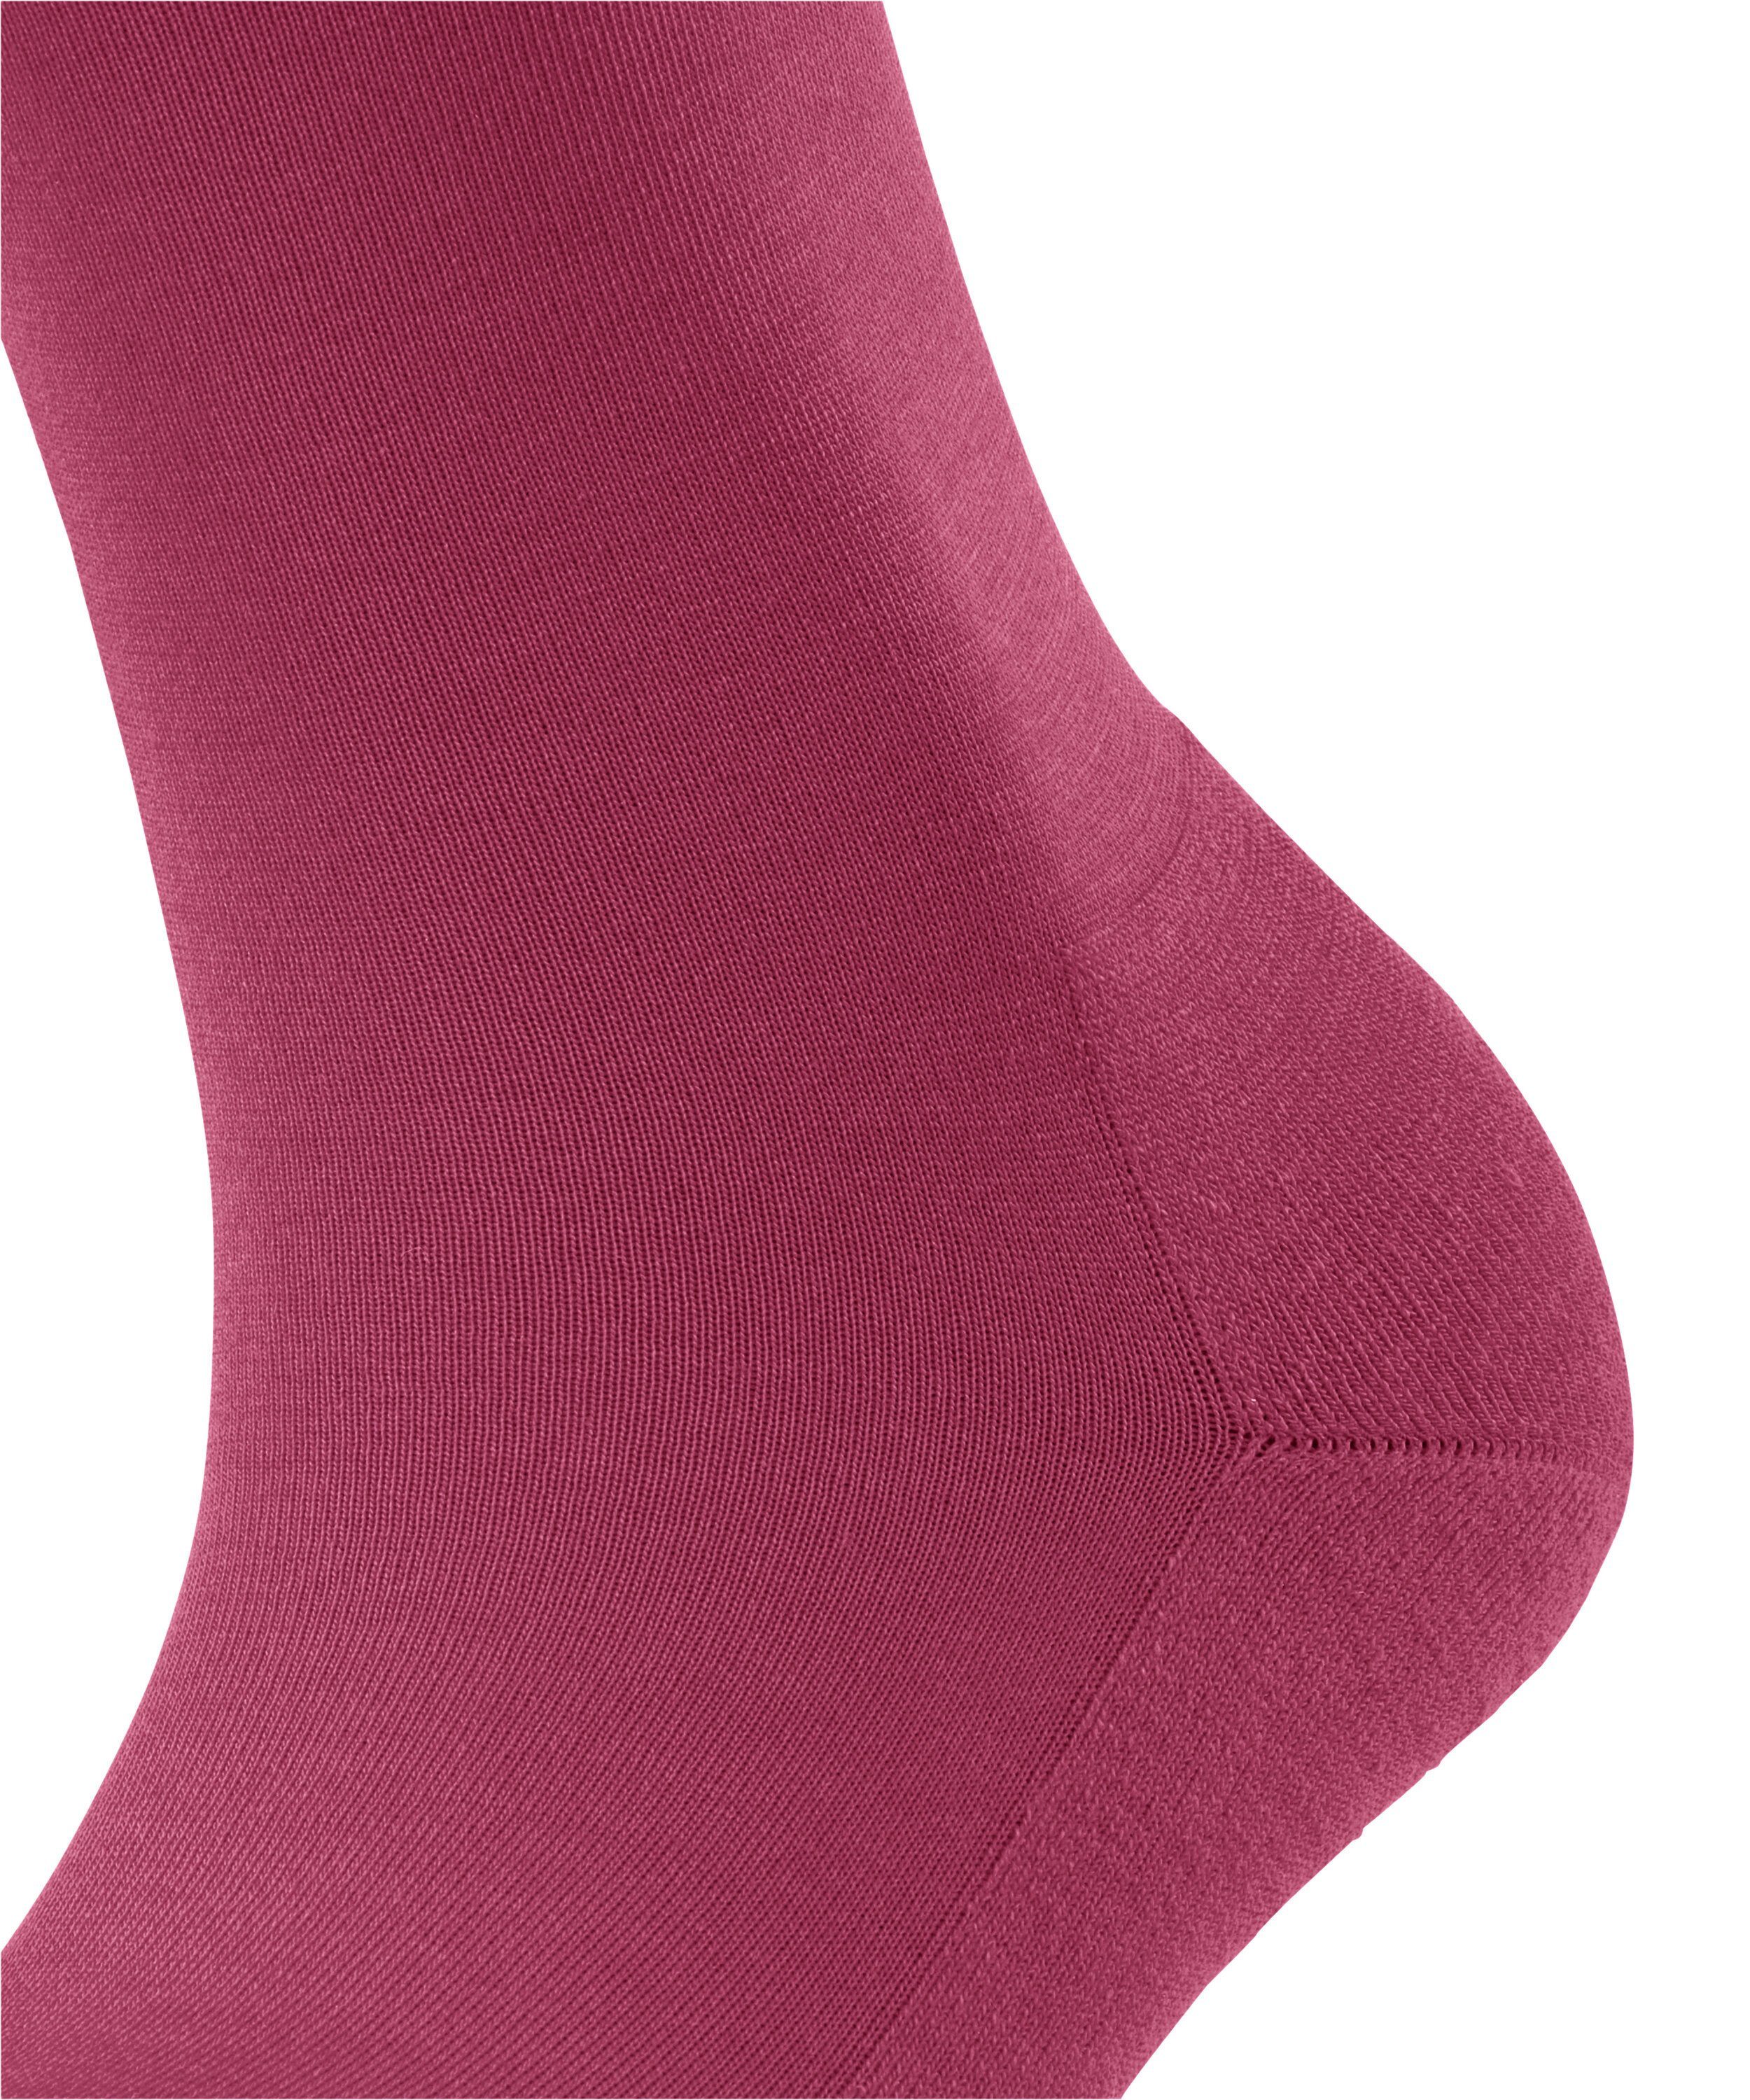 rose ClimaWool (8025) FALKE (1-Paar) Socken engl.